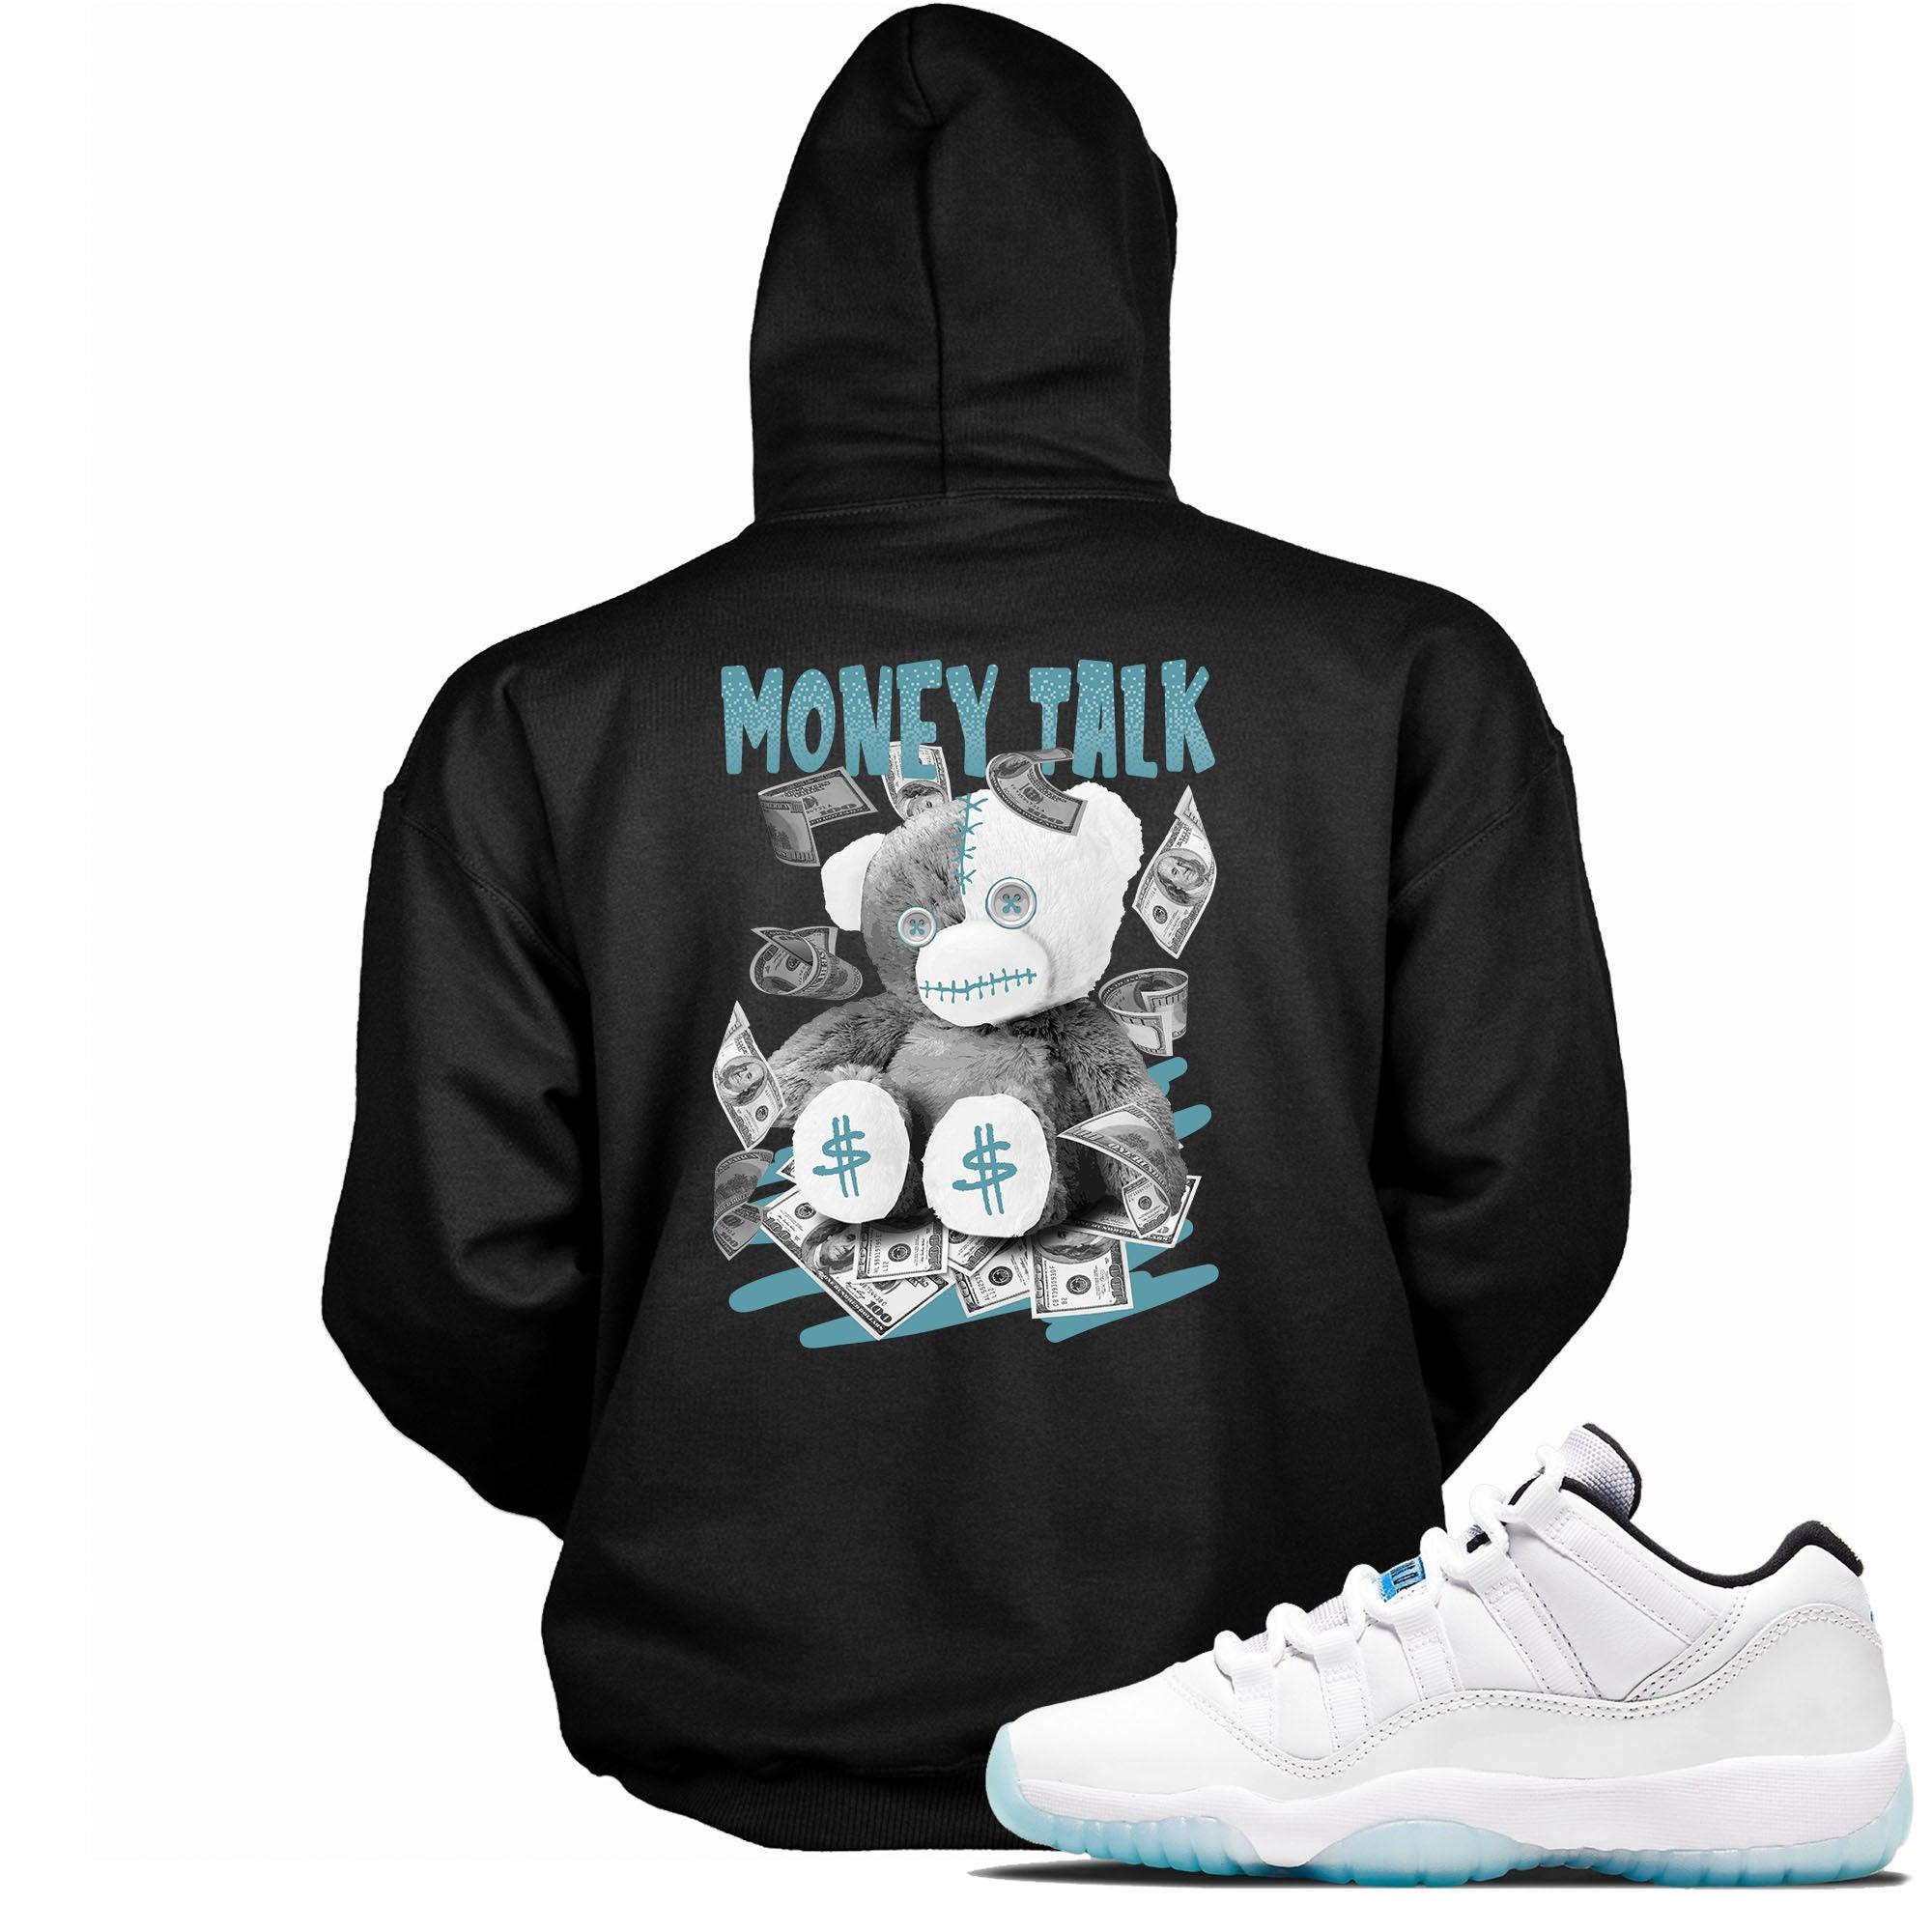 Money Talk Sneaker Sweatshirt AJ 11 Retro Low Legend Blue photo